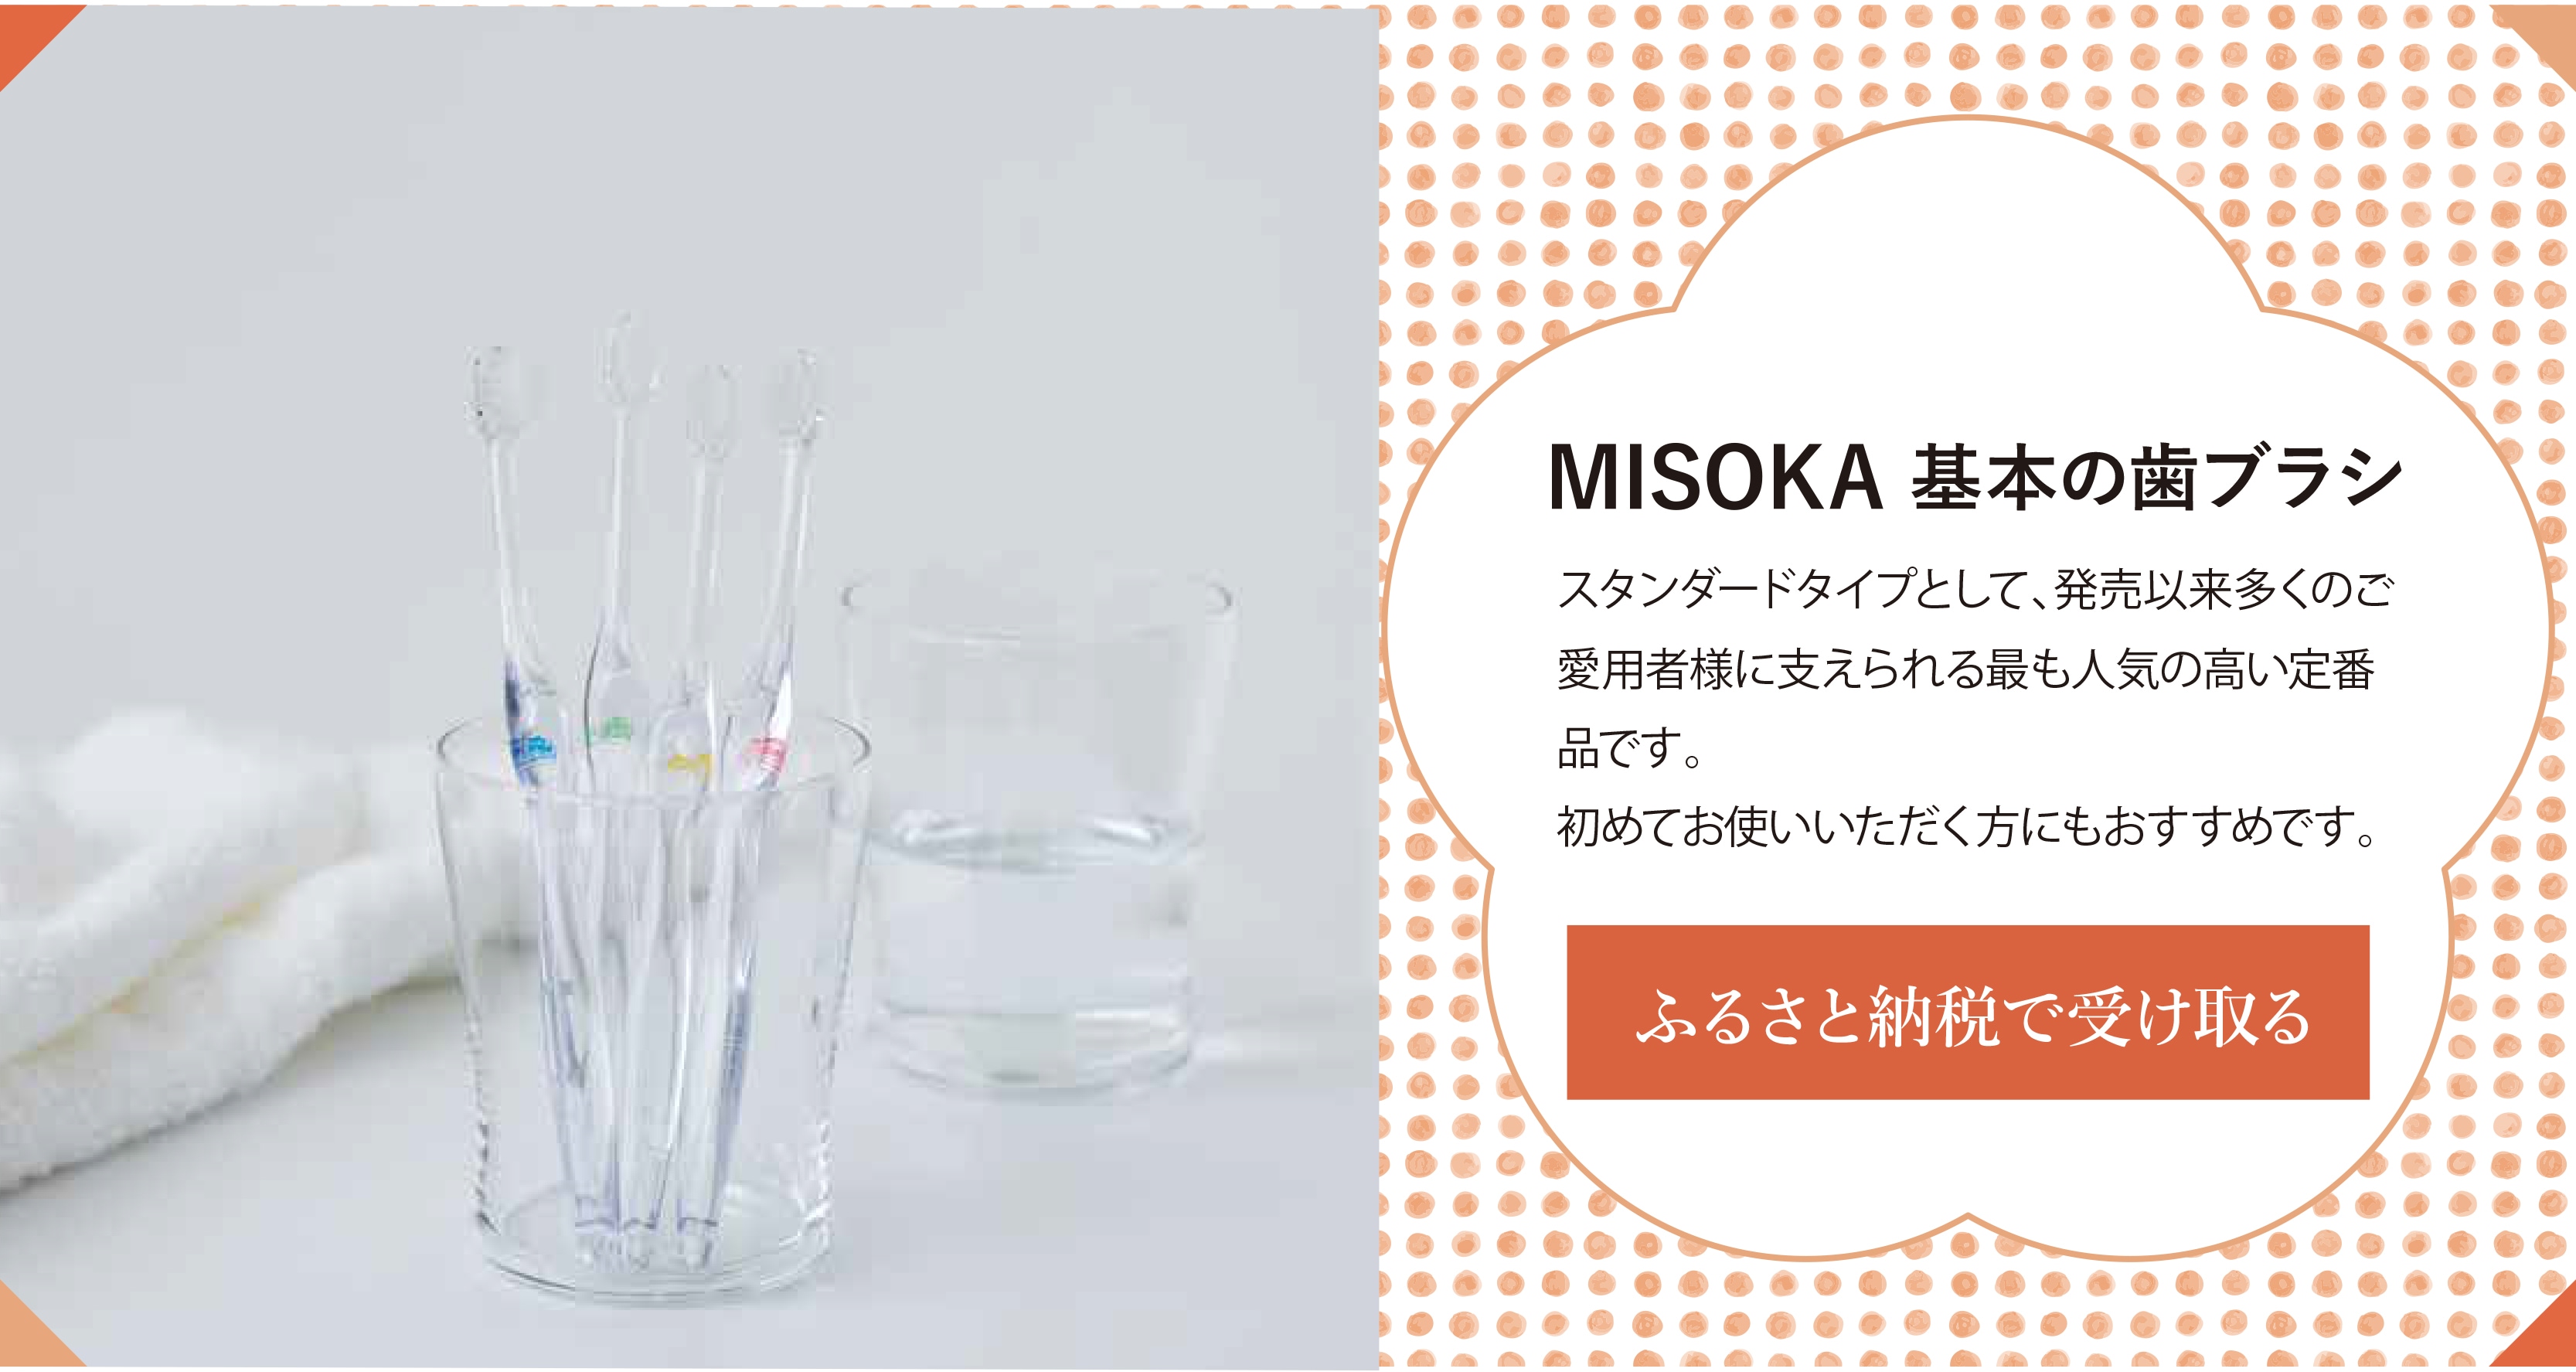 MISOKA基本の歯ブラシ